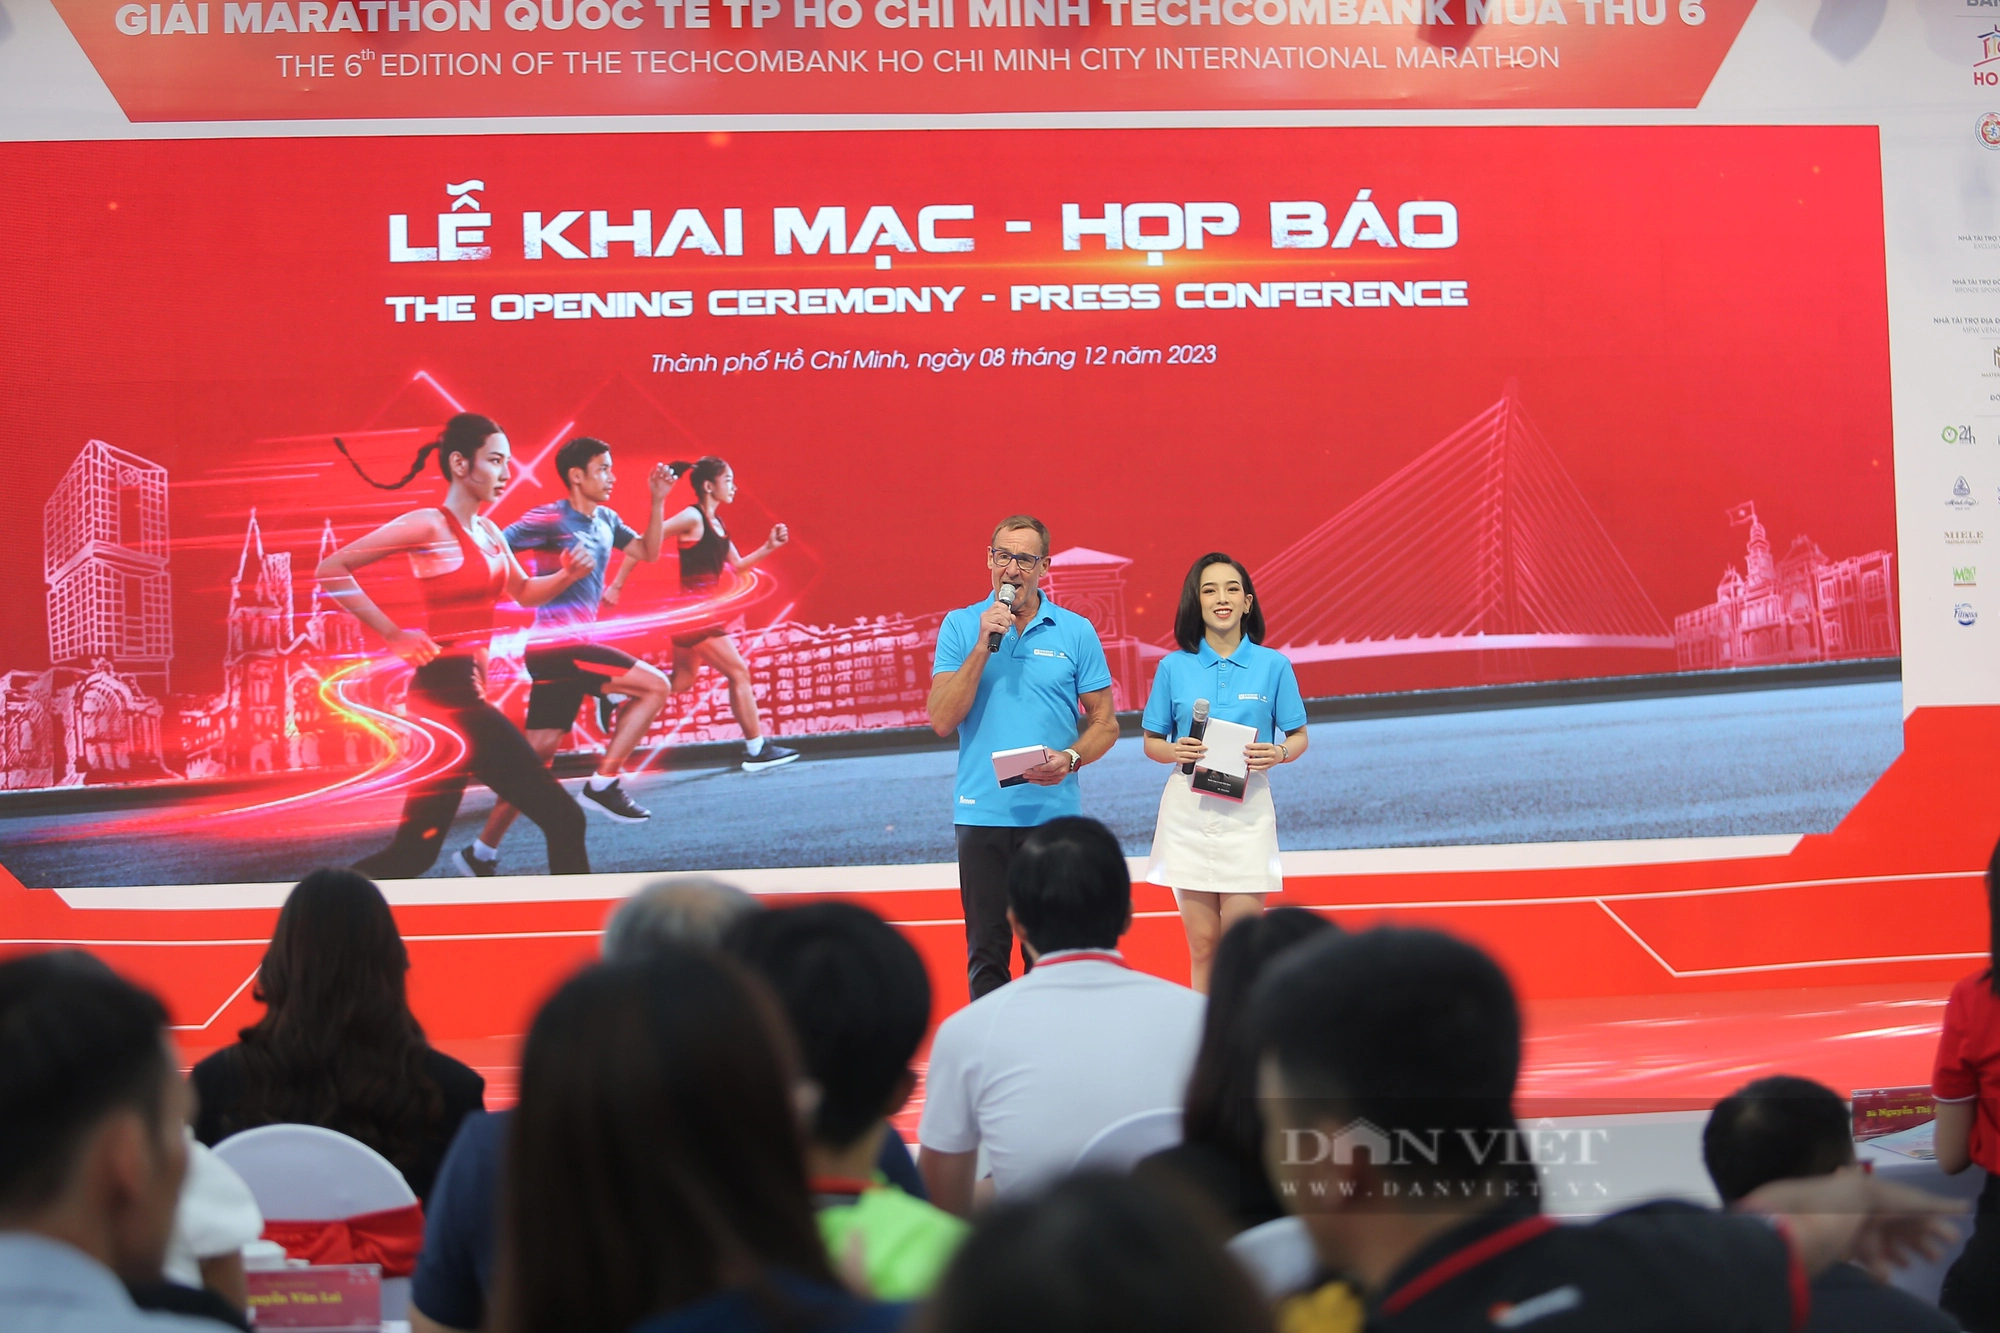 Hoa hậu Thuỳ Tiên, Nữ hoàng điền kinh Nguyễn Thị Oanh tranh tài ở Giải Marathon Quốc tế TP.HCM - Ảnh 1.